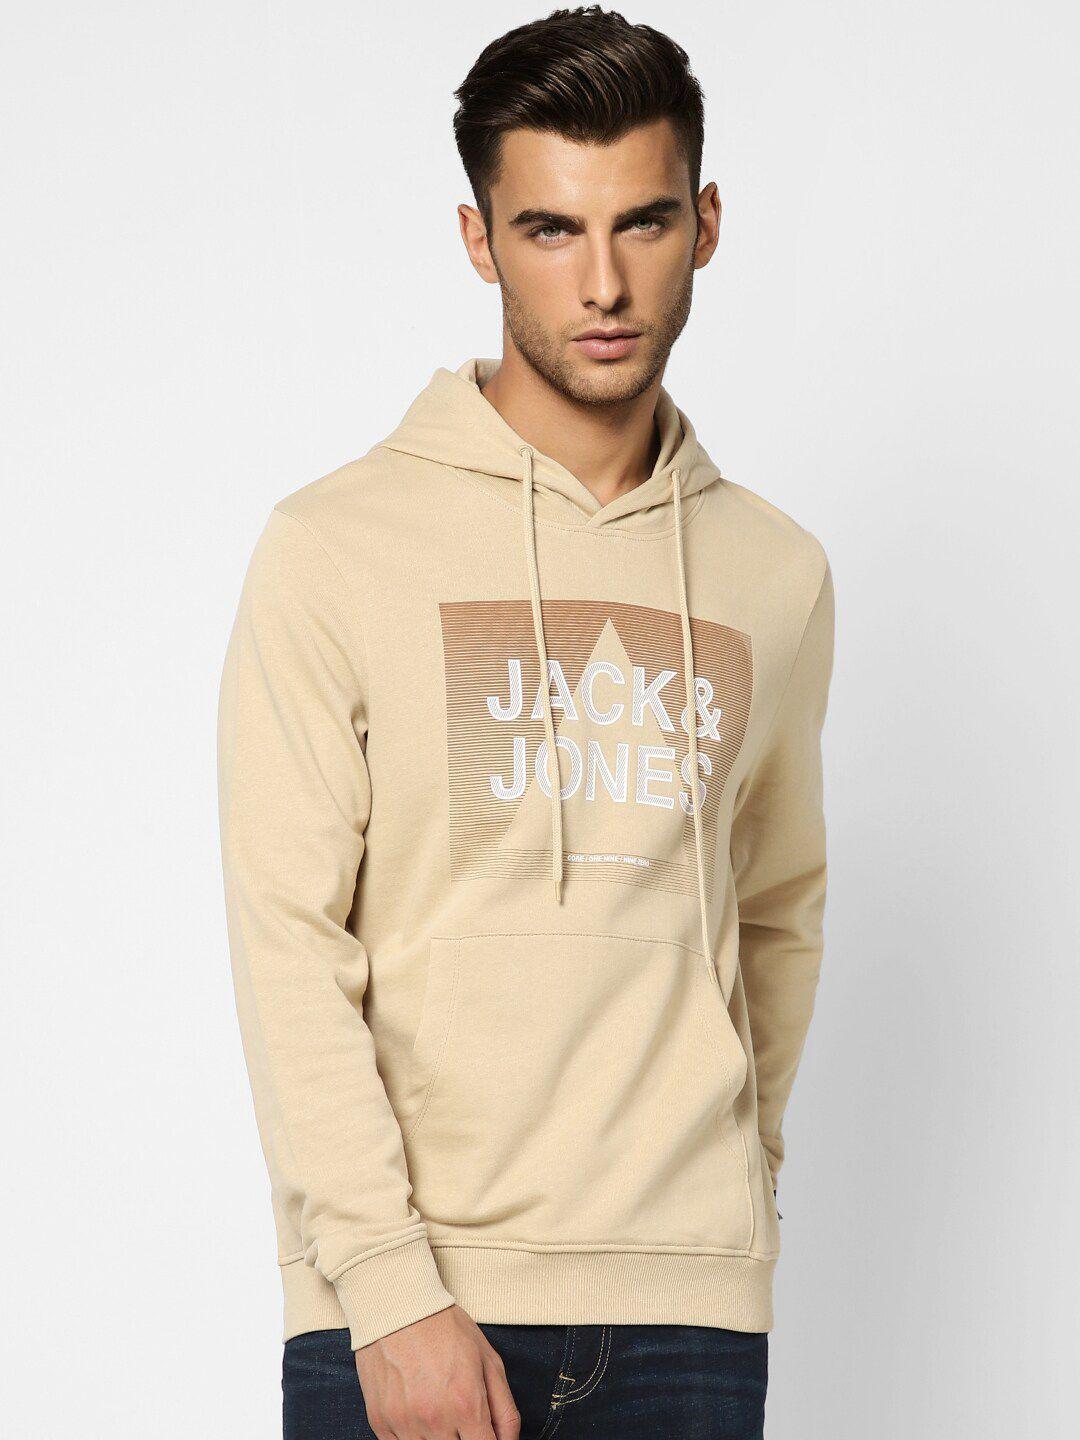 jack-&-jones-men-beige-printed-hooded-cotton-sweatshirt